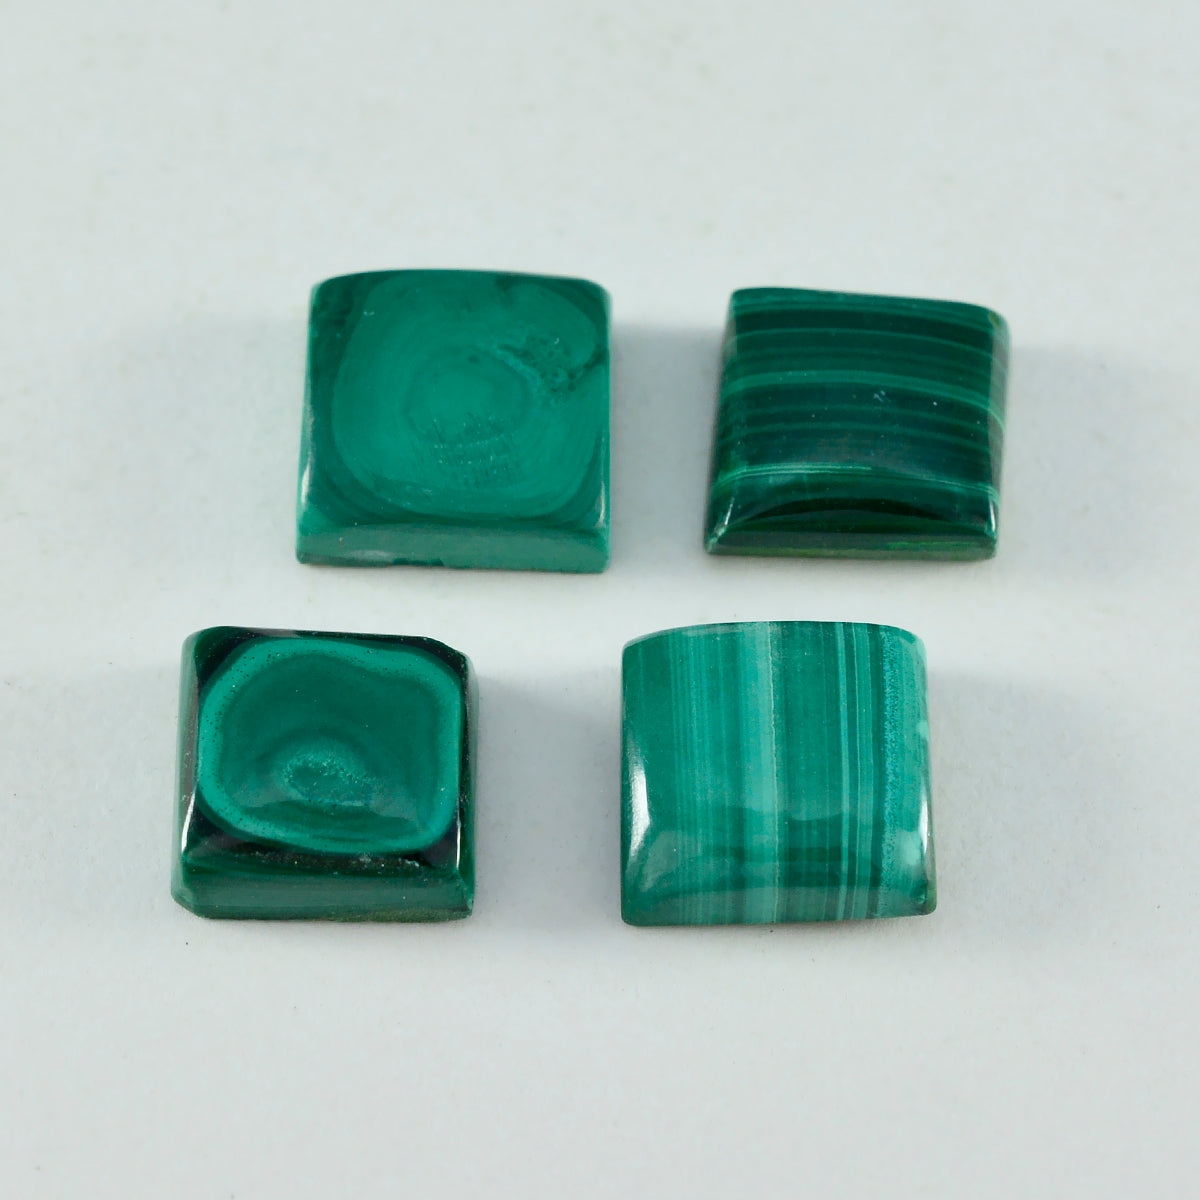 riyogems 1шт зеленый малахит кабошон 9x9 мм квадратной формы, качественный драгоценный камень